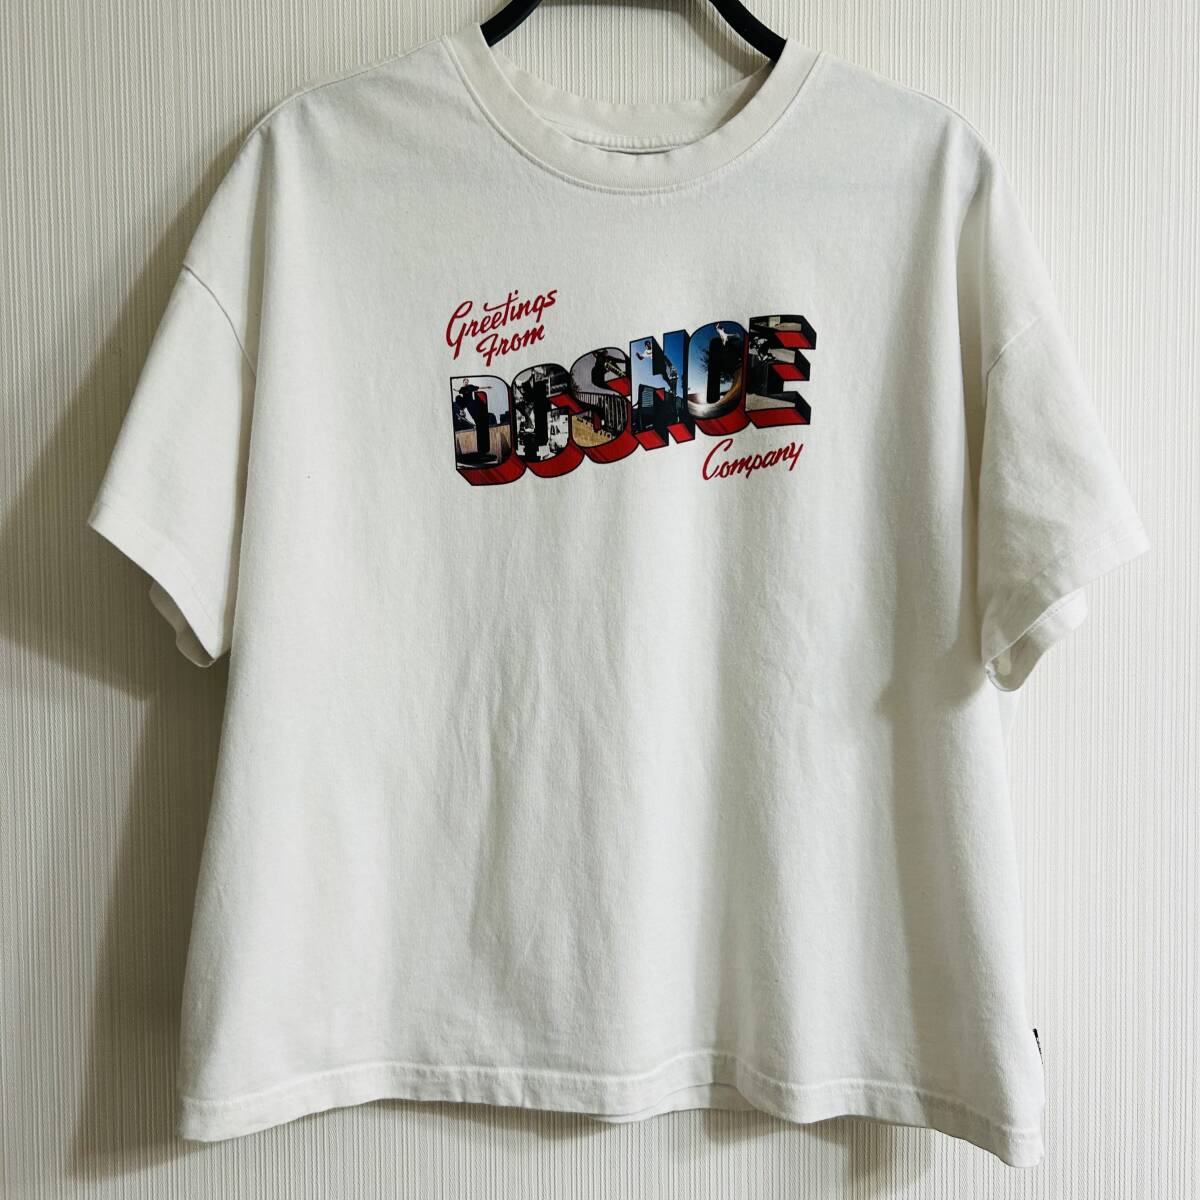 DC SHOES/Tシャツ/半袖/ディーシー /レディース/ジュニア/ロゴ